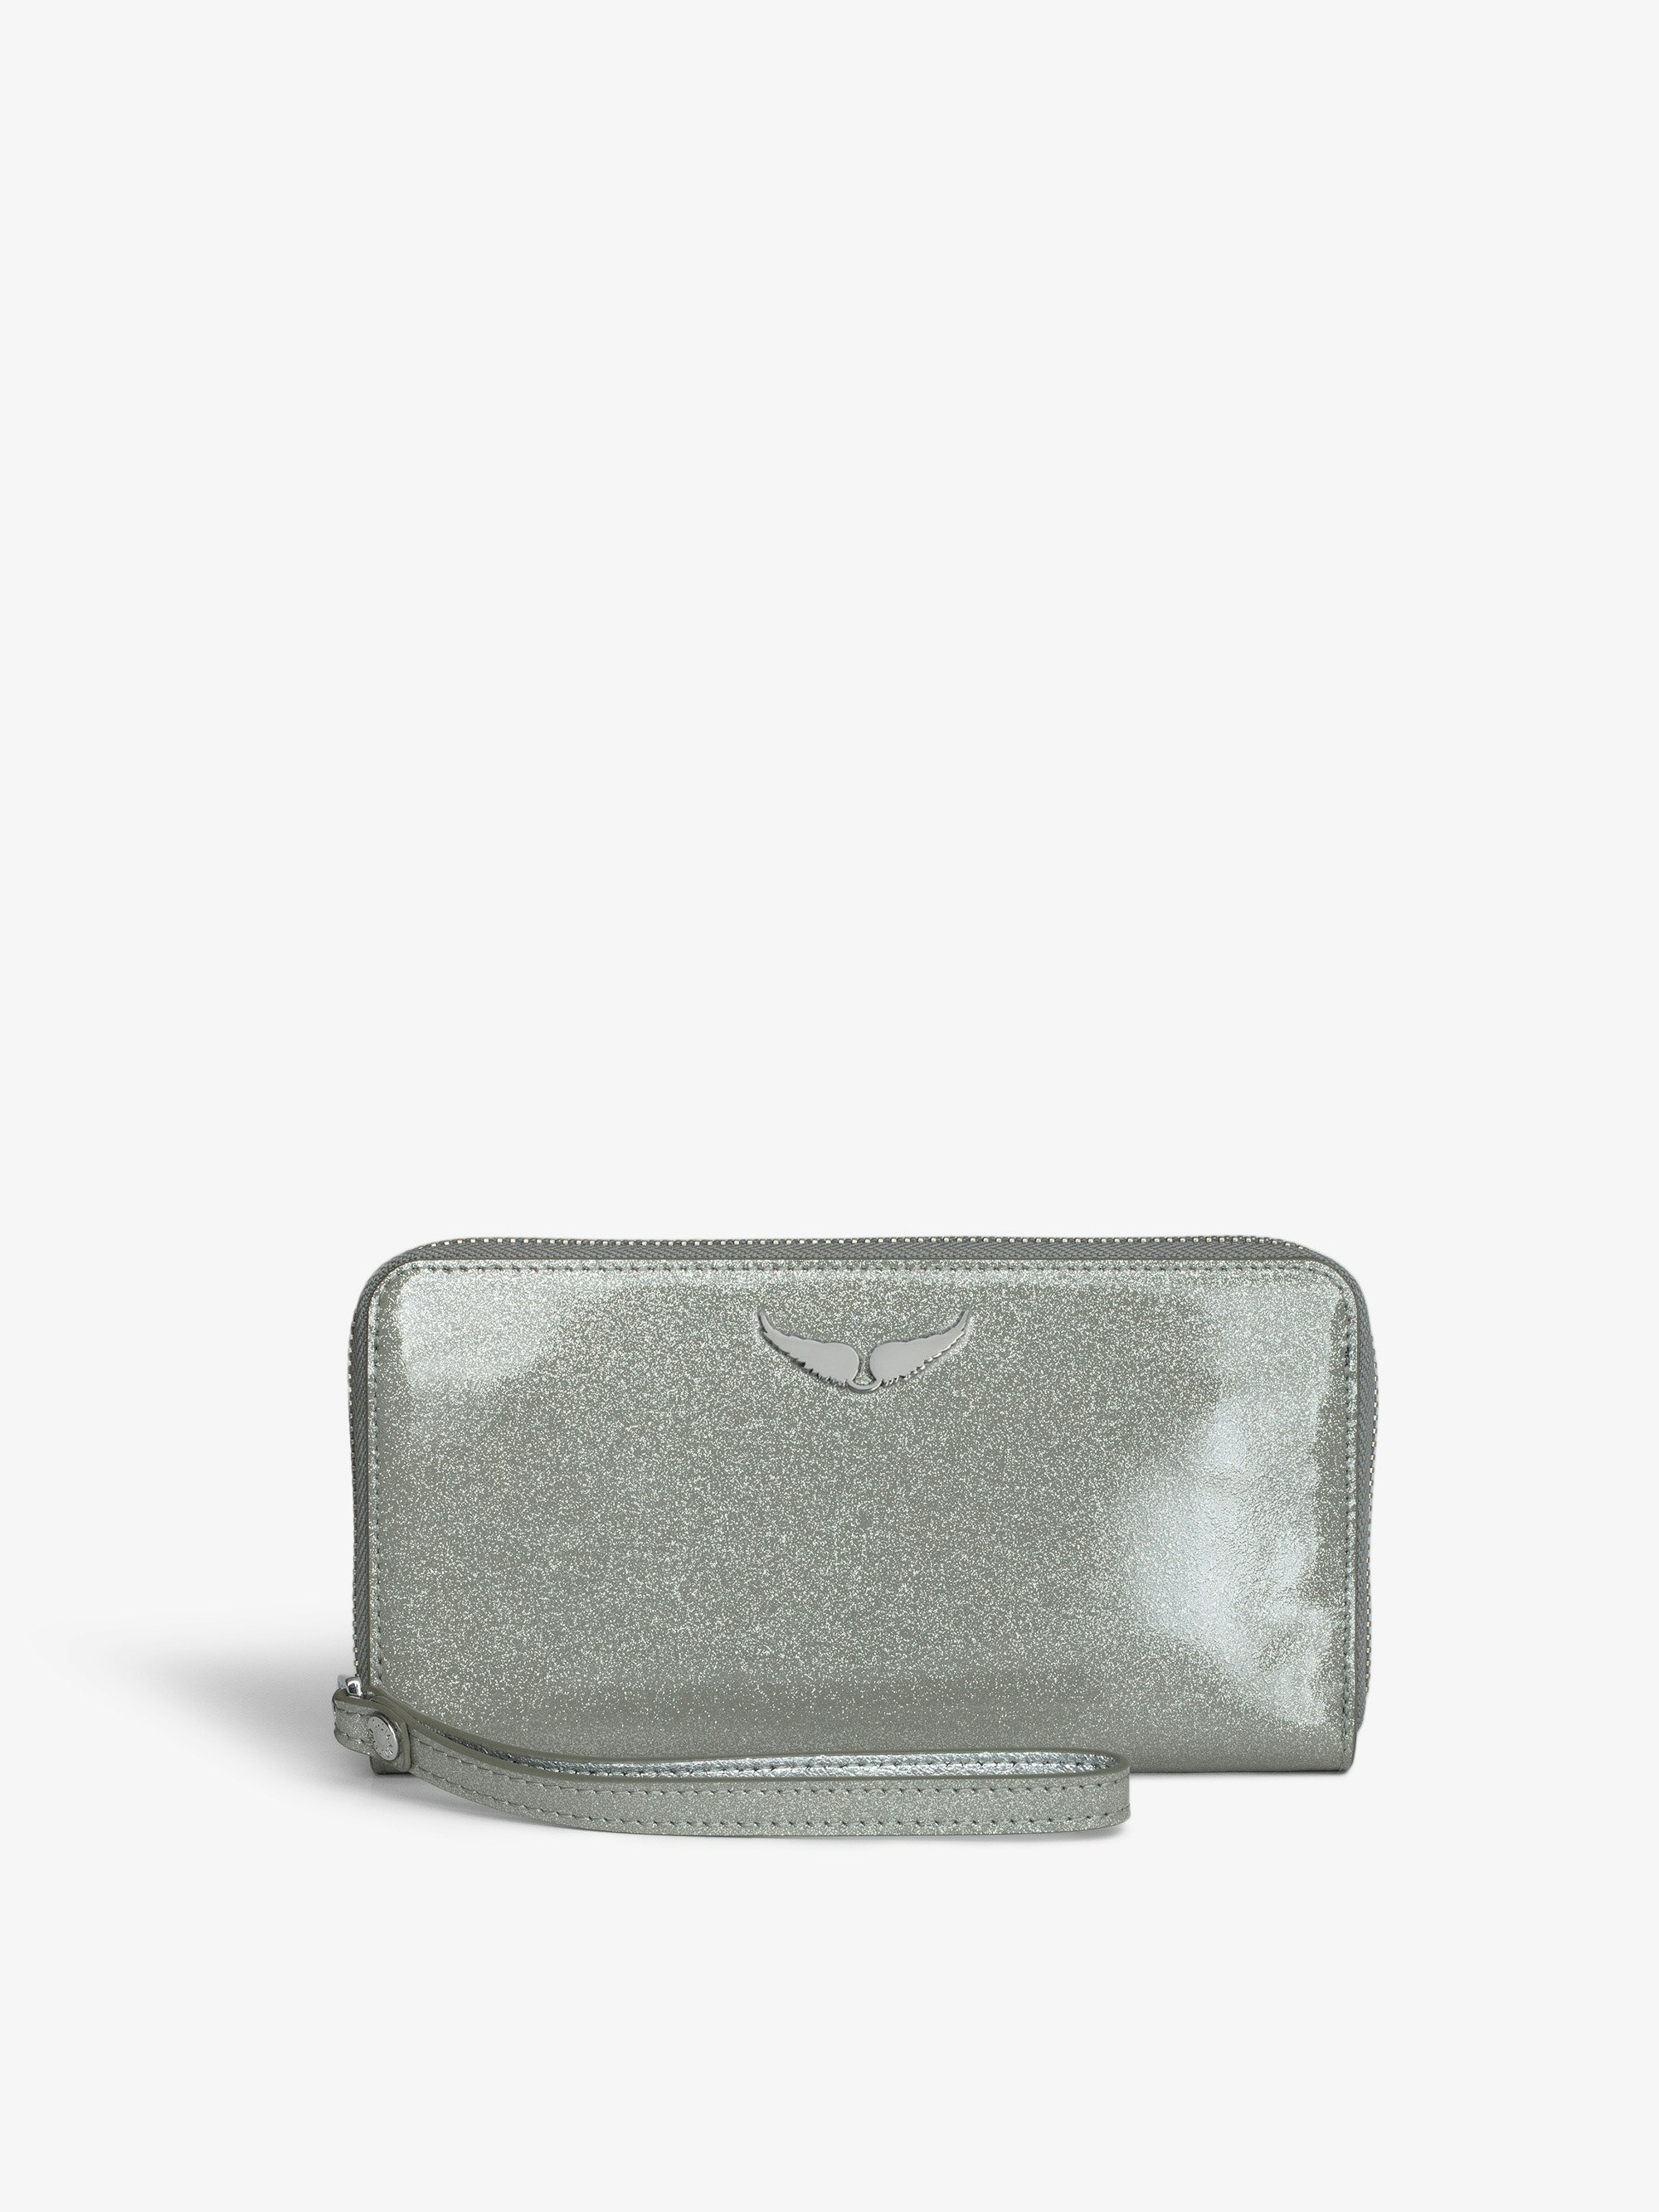 Brieftasche Compagnon Infinity Patent - Brieftasche aus silbernem Lackleder mit Pailletten, Verschlussriemen und einem Flügel-Charm.